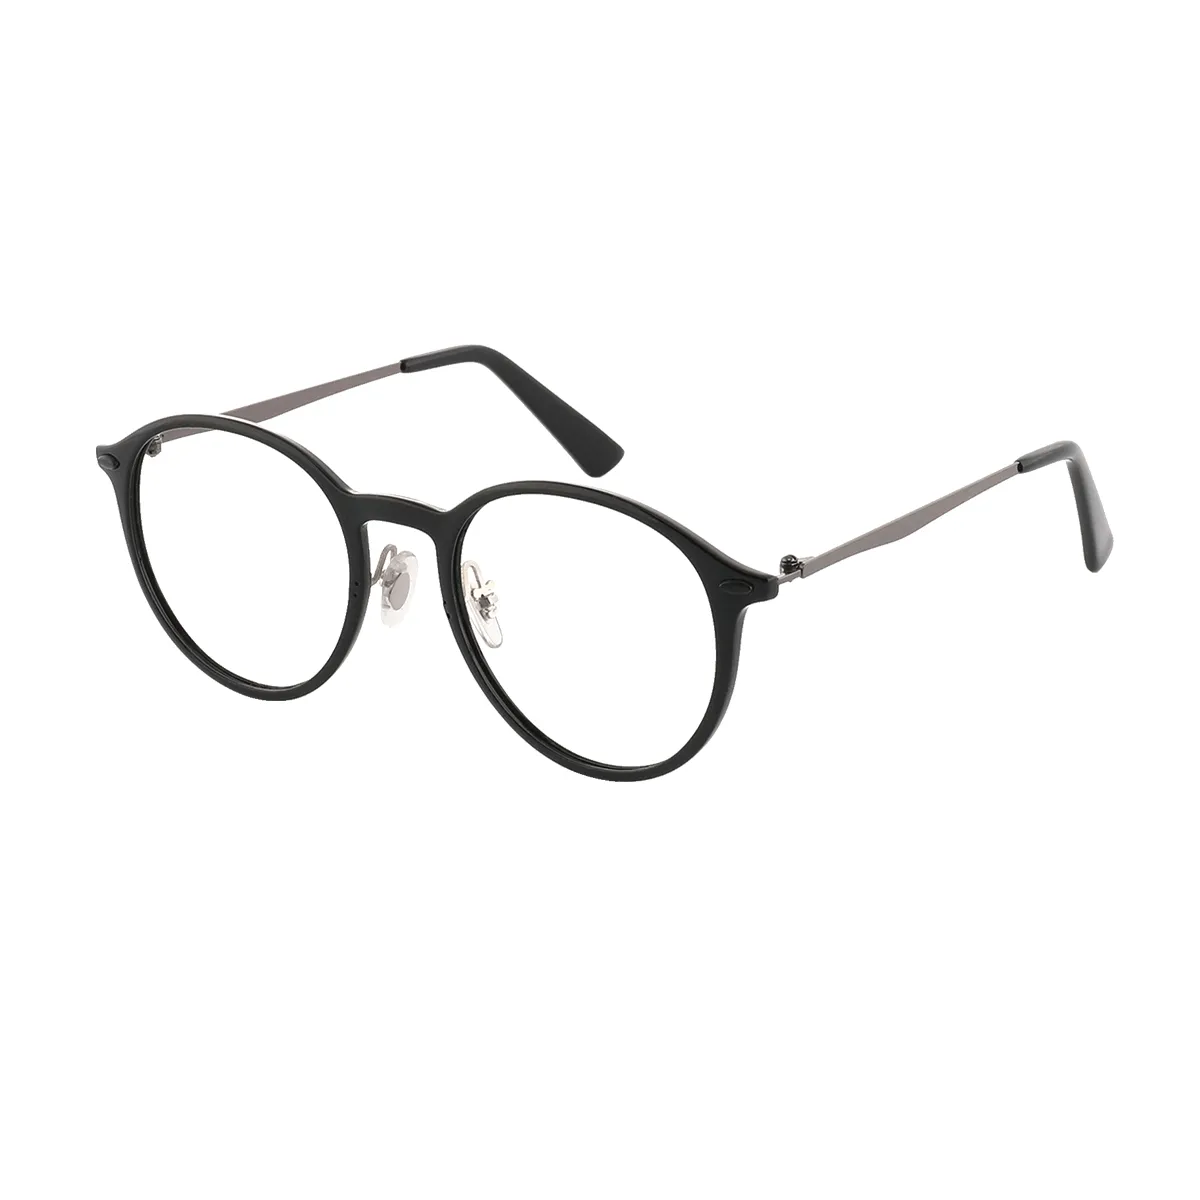 Classic Oval Blue Glasses for Men & Women